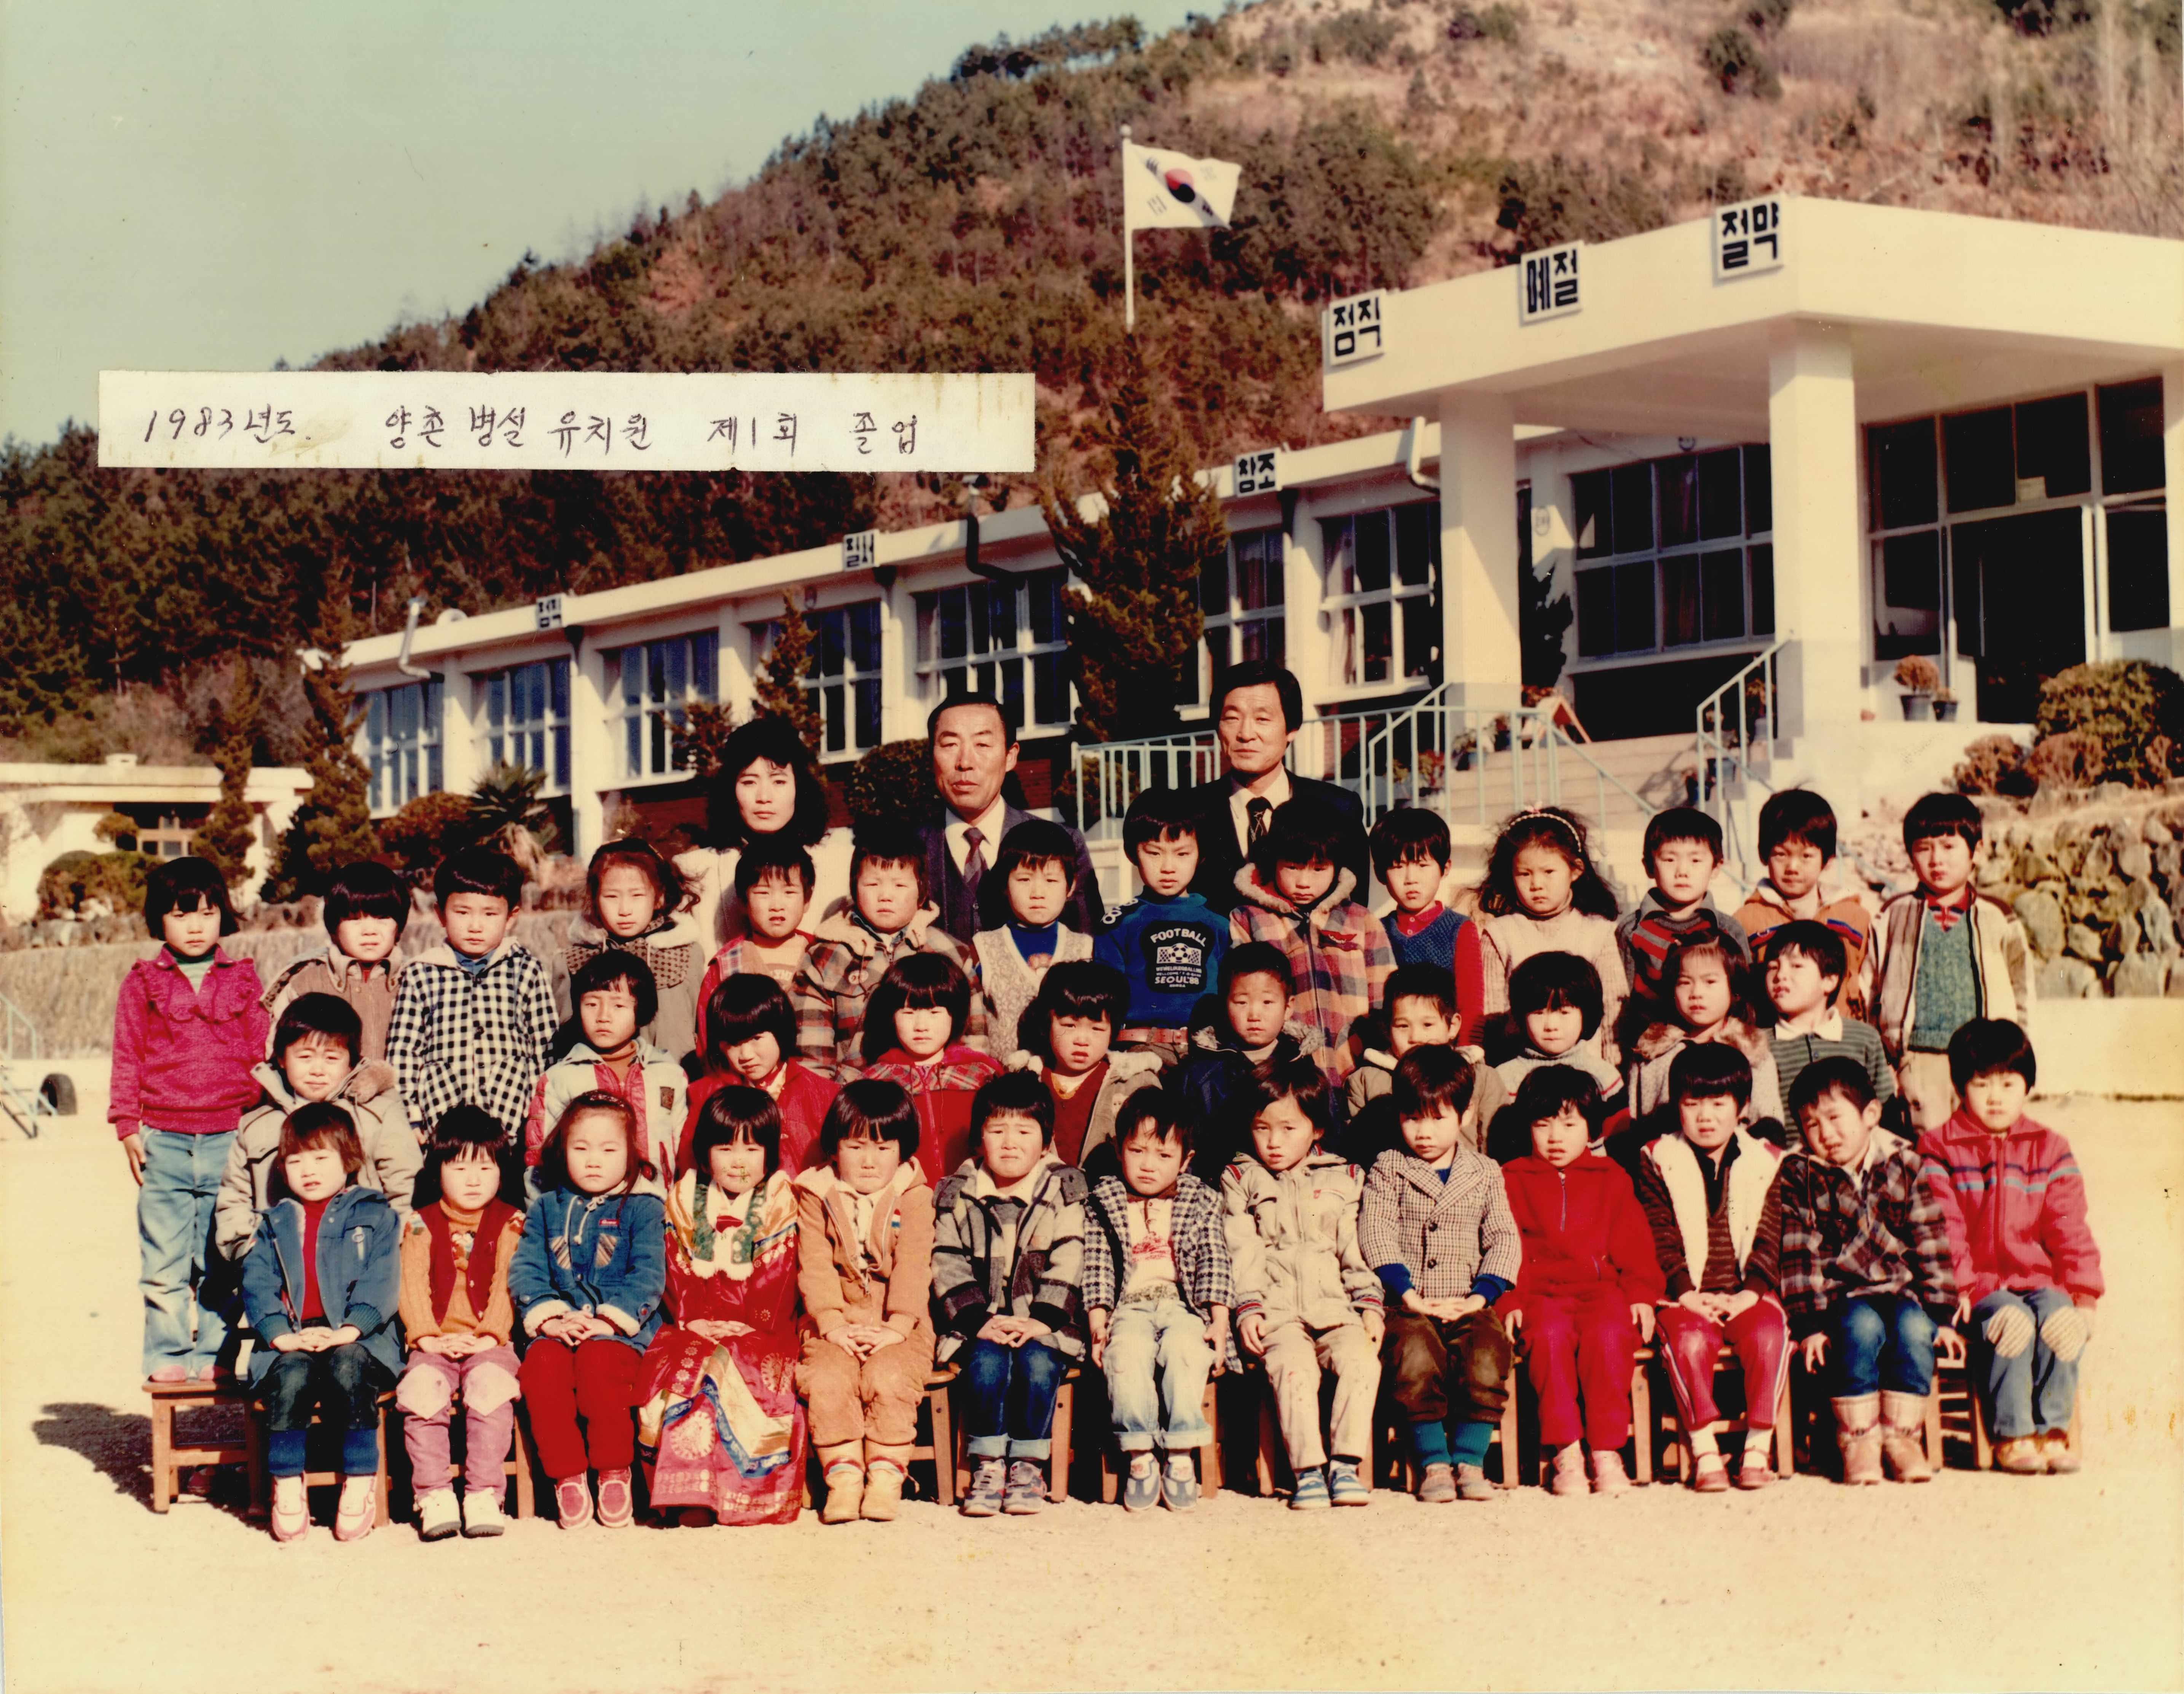 
															
															
																
																	양촌초등학교 병설유치원 제1회 졸업기념 - 1983년 [1번째 이미지]
																
																
															
														